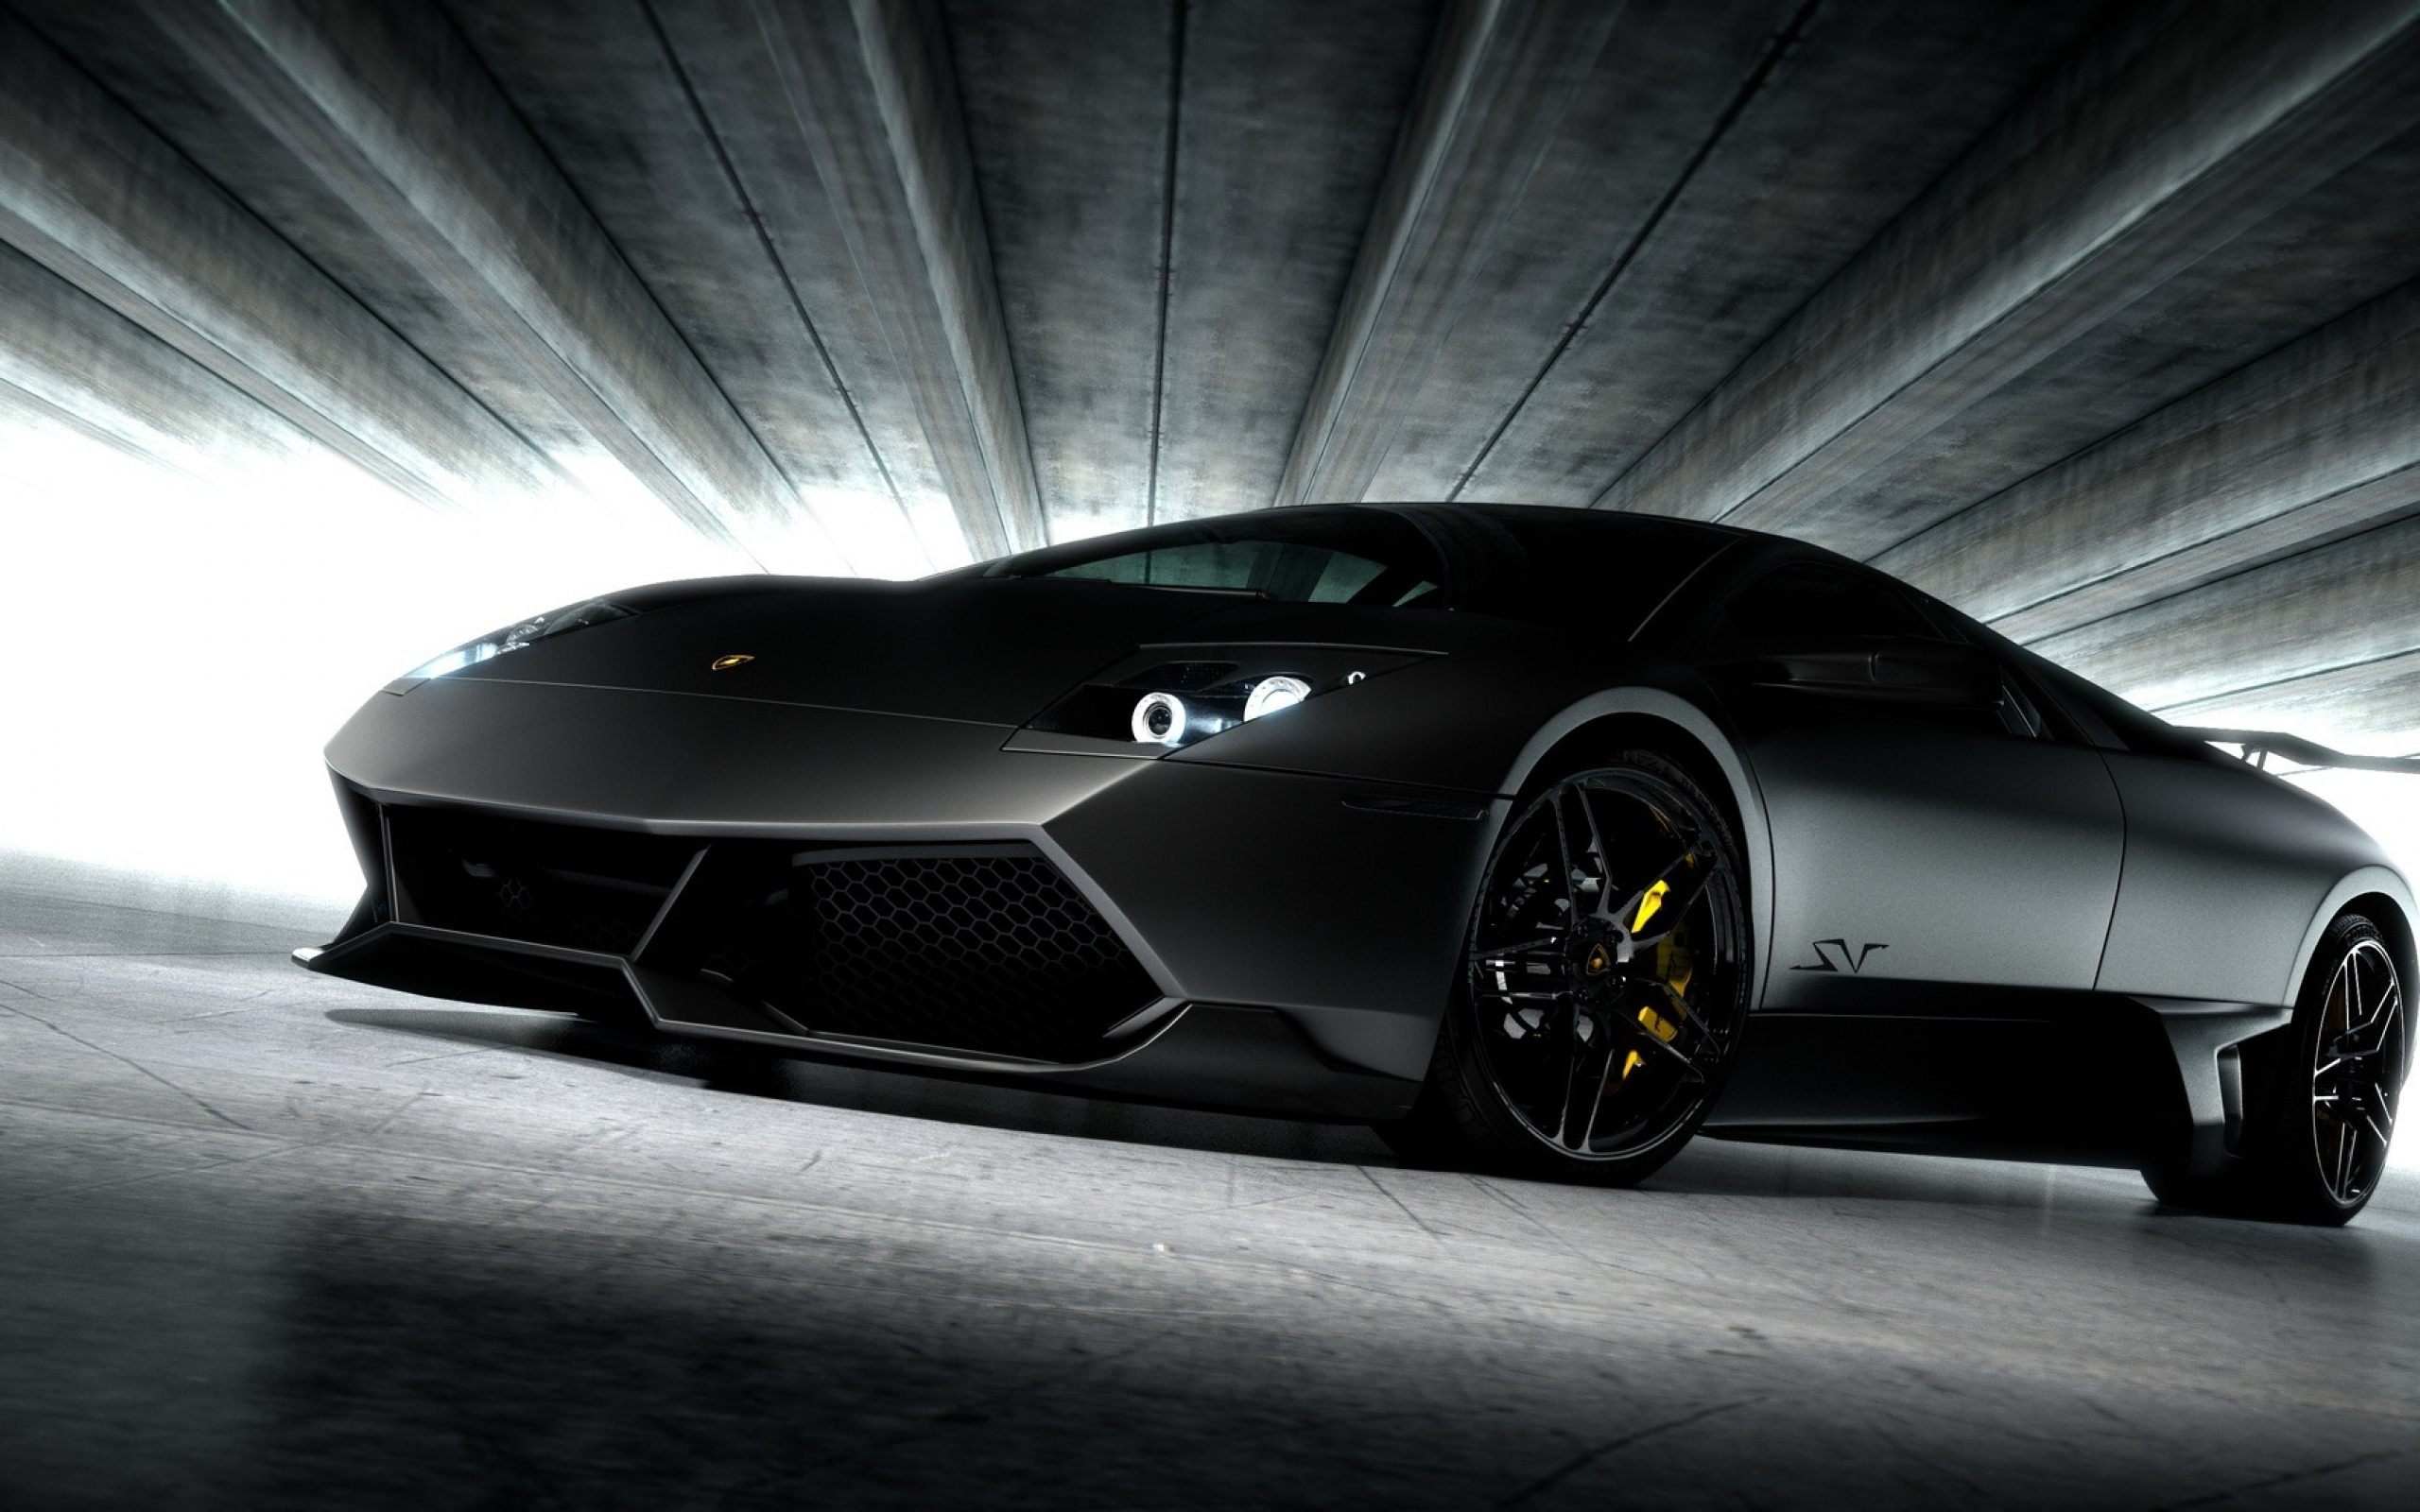 72 Black Lamborghini Wallpaper On Wallpapersafari Images, Photos, Reviews